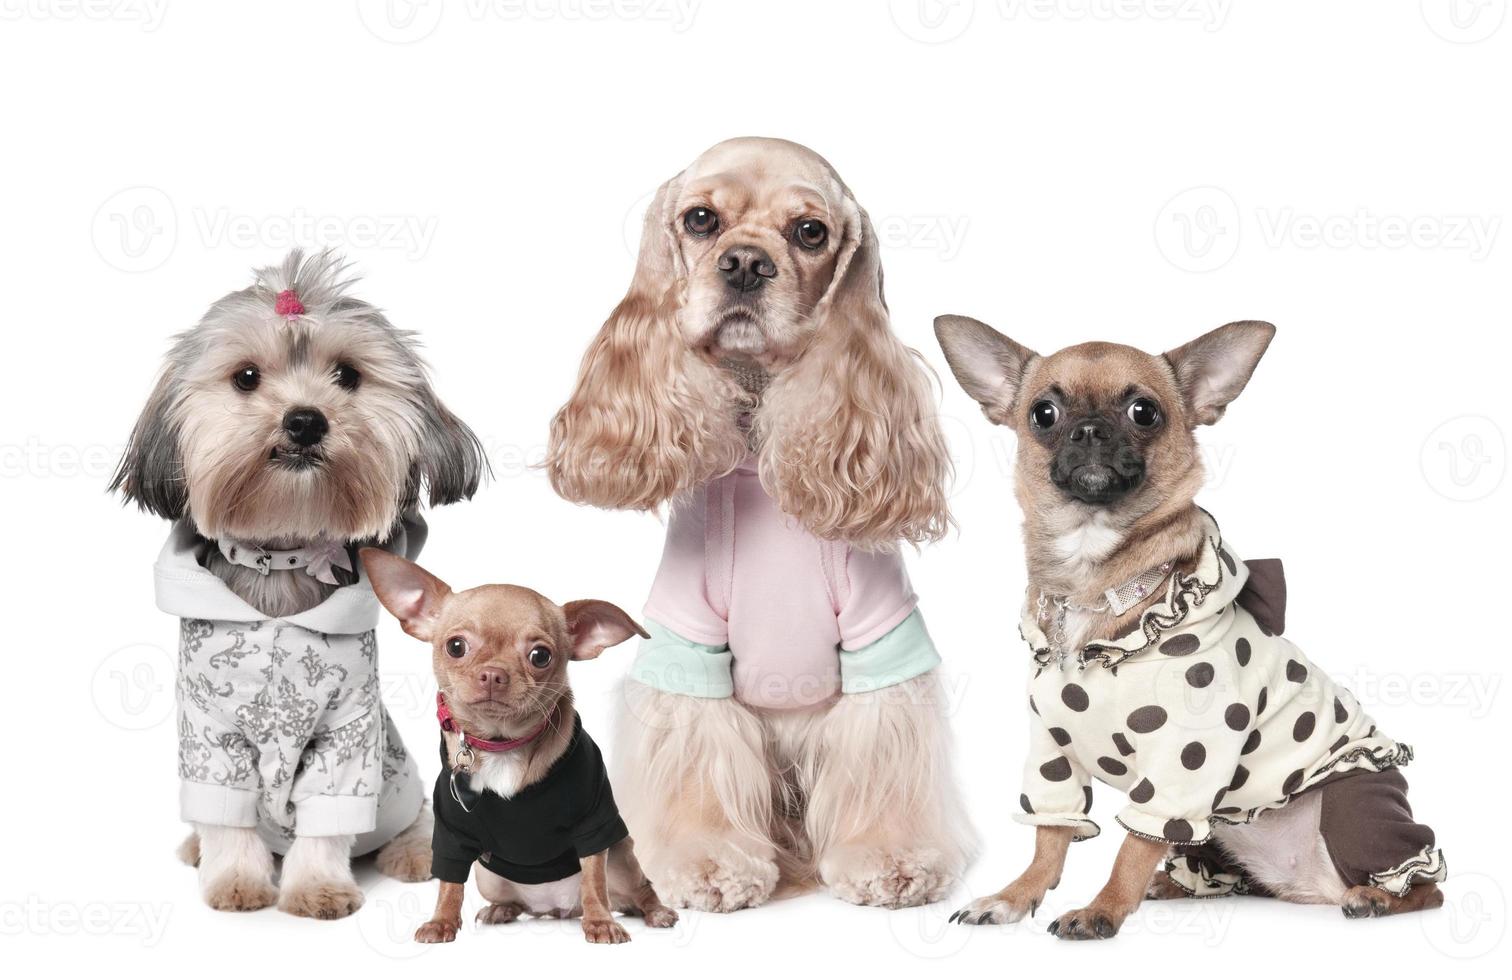 Beaucoup de chiots de chien brun drôle de chiot souriant chien une patte et chiot mignon sur blanc photo